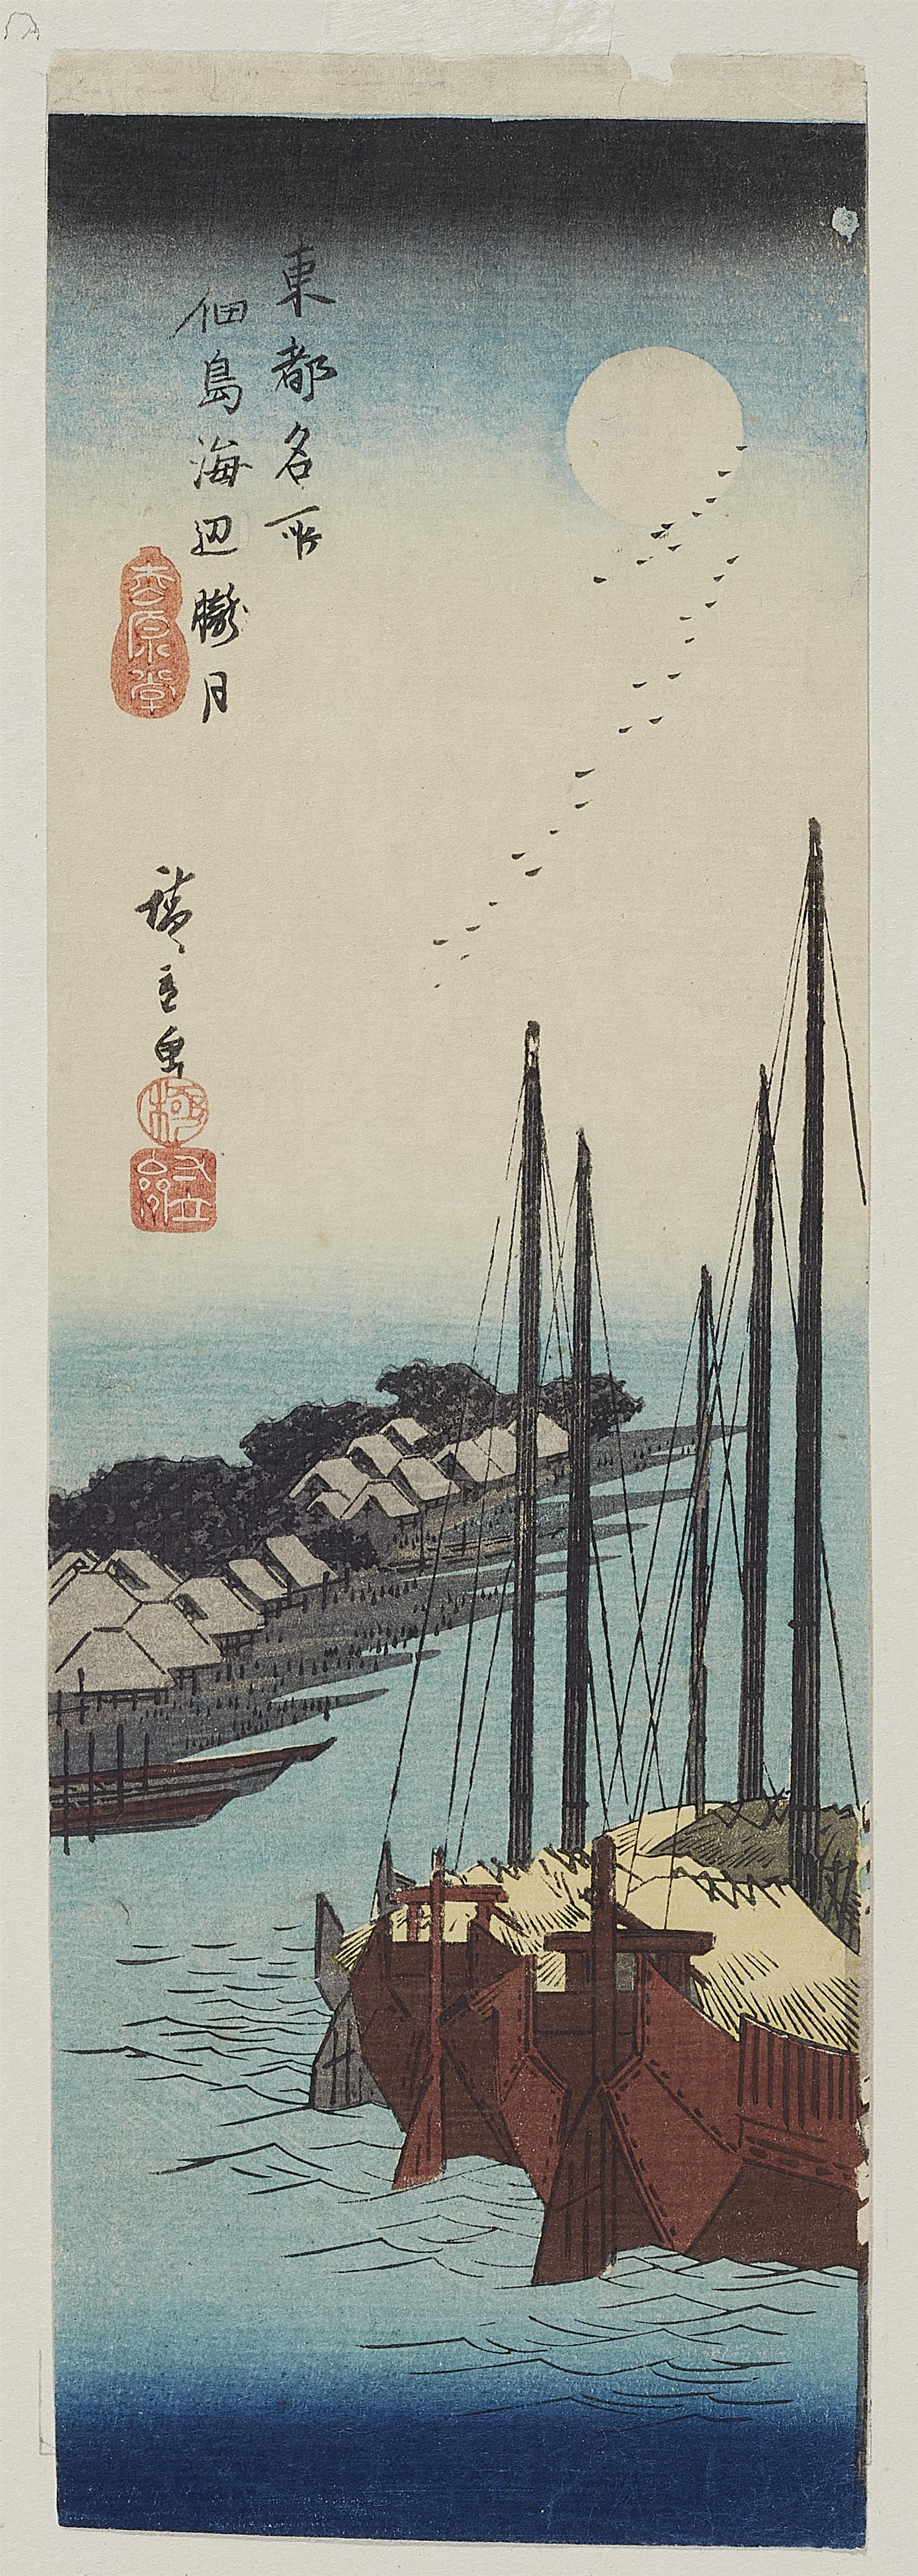 Utagawa Hiroshige - Vollmond über der Insel und den Schiffen - image-1